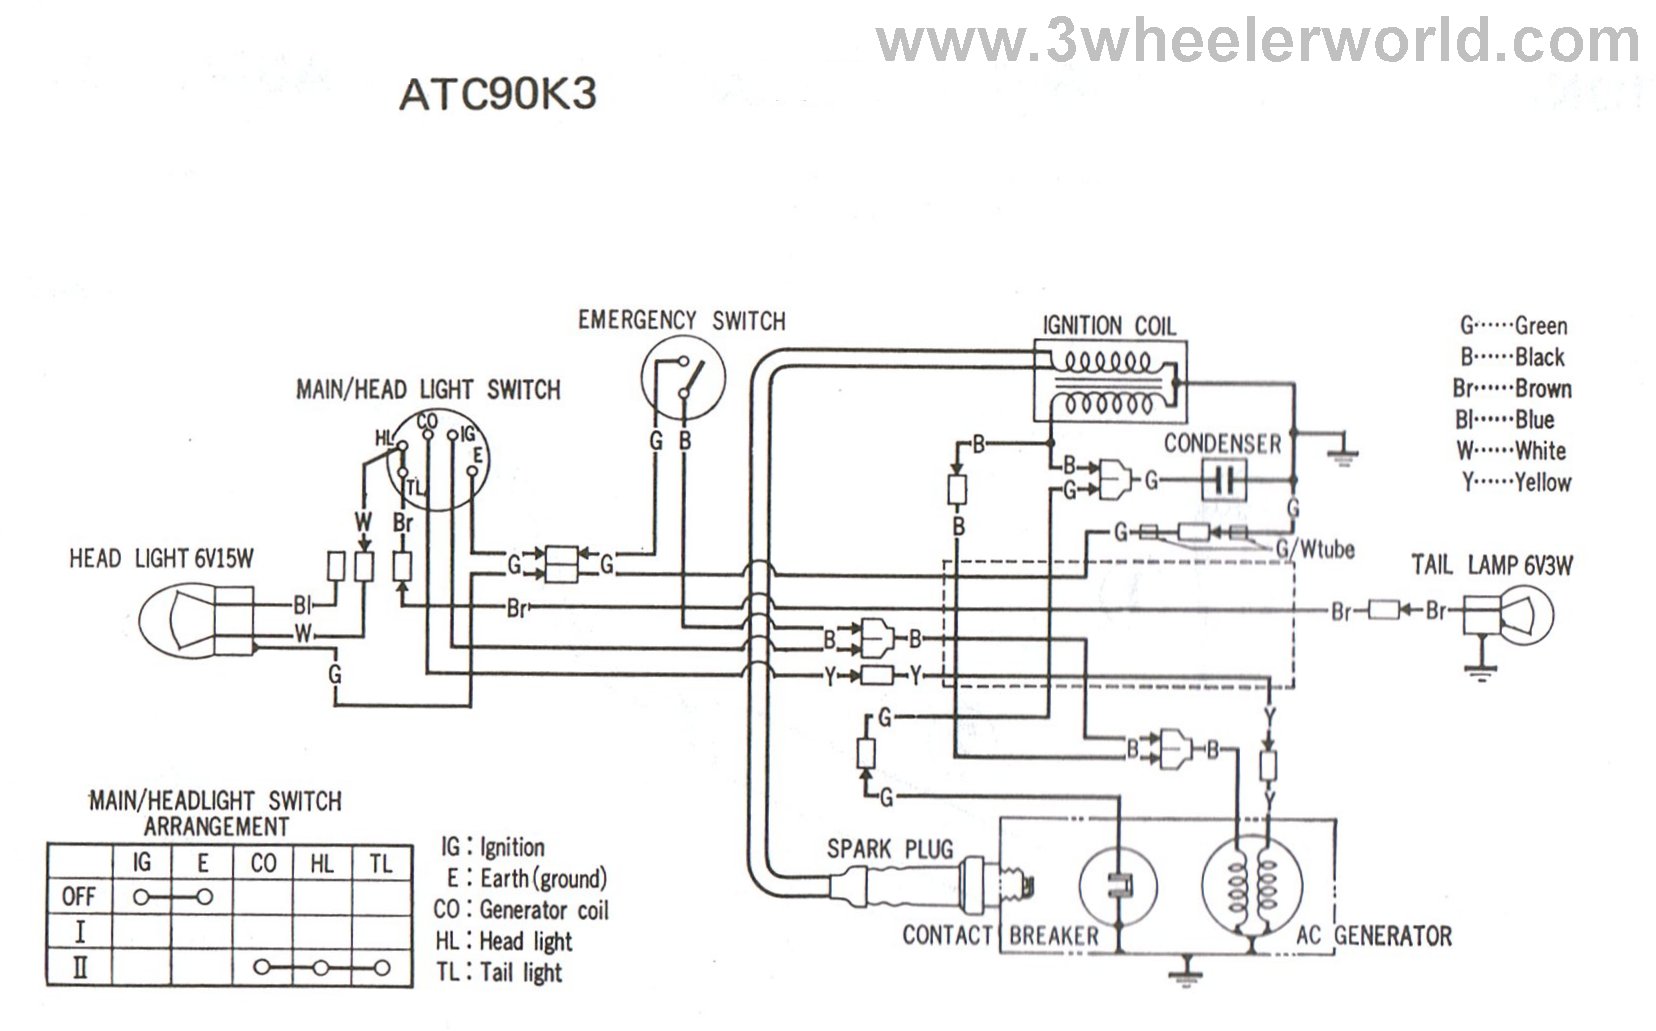 1973 honda ct90 wiring diagram